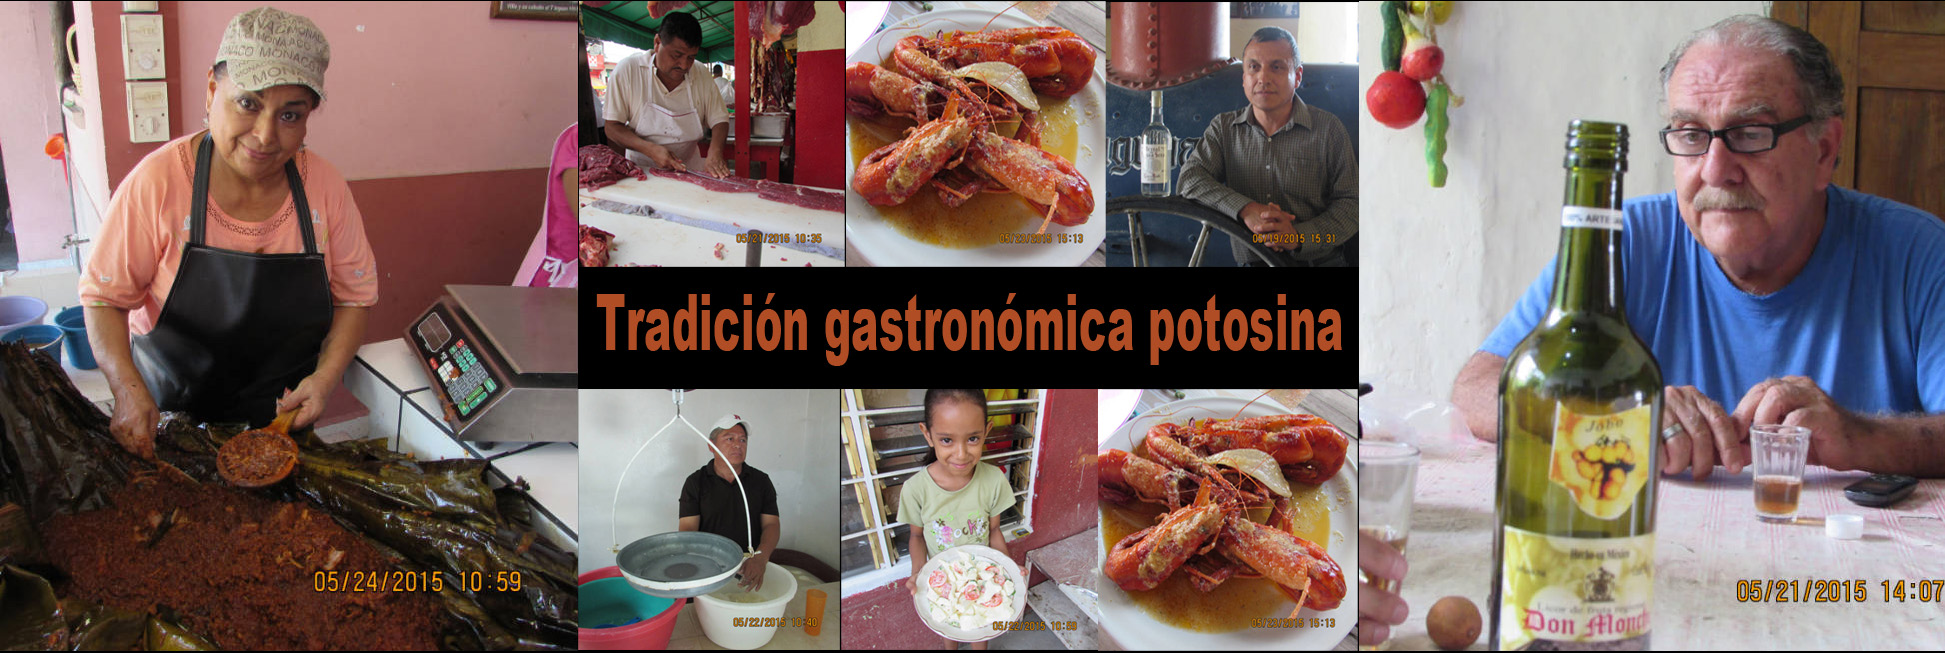 Libro de tradición gastronómica de Potosina